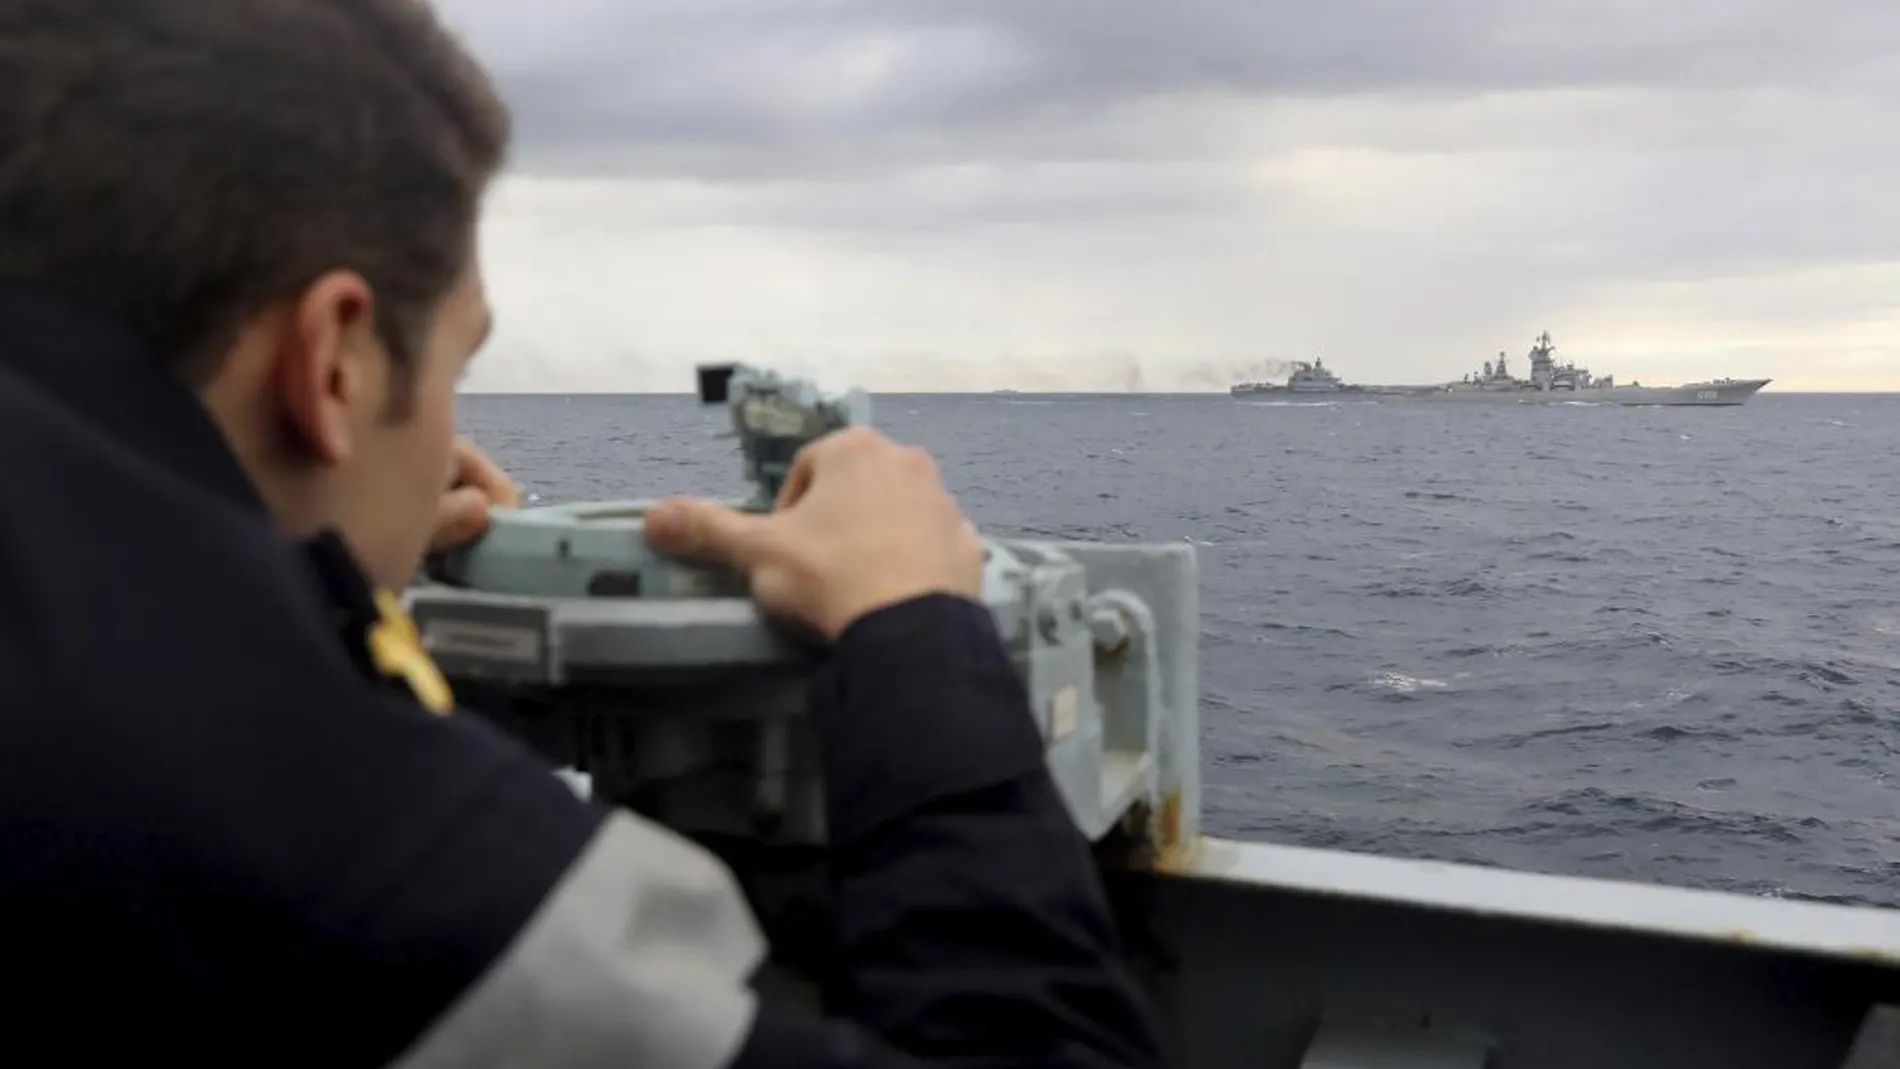 El portaaviones "Almirante Kuznetsov"a su paso por el mar Mediterráneo a una zona próxima a Siria